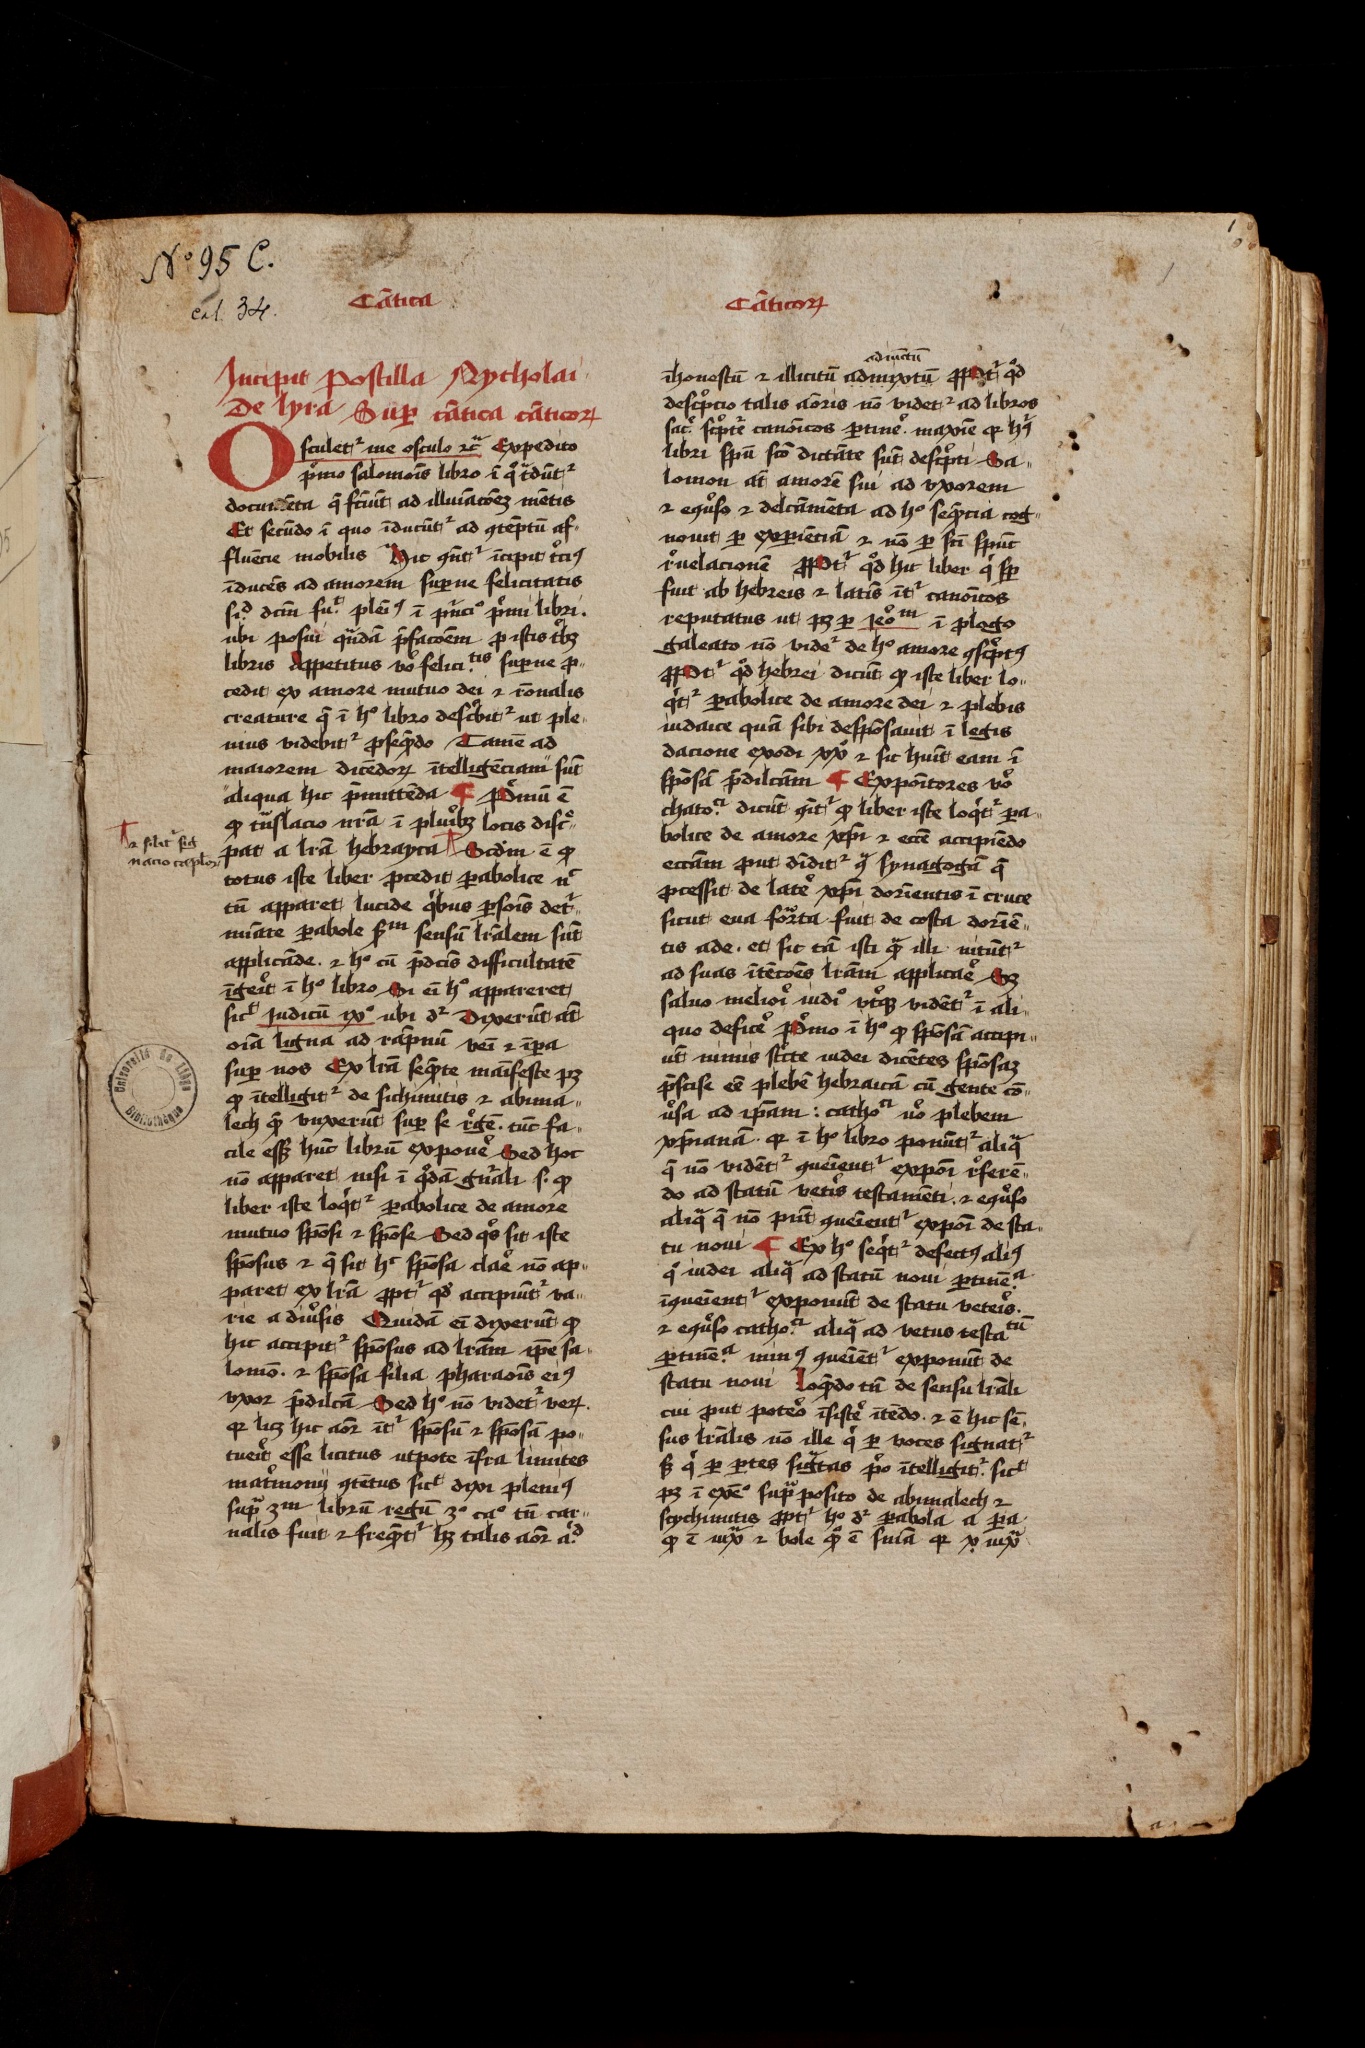 Nicolaus de Lyra, Postilla super Canticum canticorum, Ecclesiasticum, libros Machabeorum, Genesim, Exodum, Leveticum, Librum Ruthe